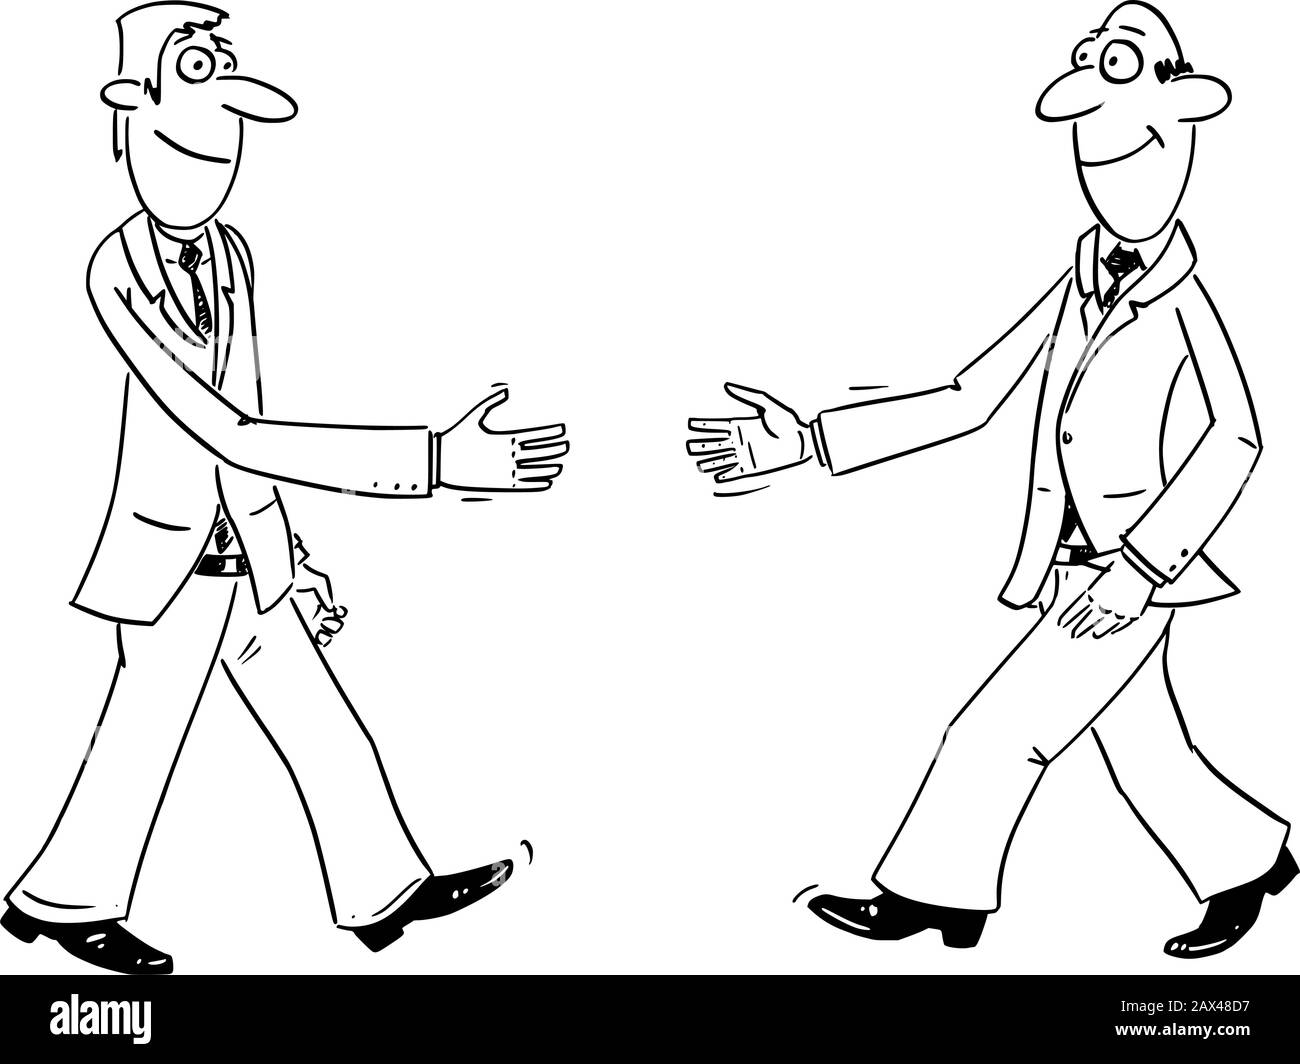 Vector lustige Comic-Cartoon-Zeichnung von zwei Geschäftsleuten, die die Hände schütteln oder Händeschütteln. Geschäftskonzept Zusammenarbeit und Freundschaft. Stock Vektor